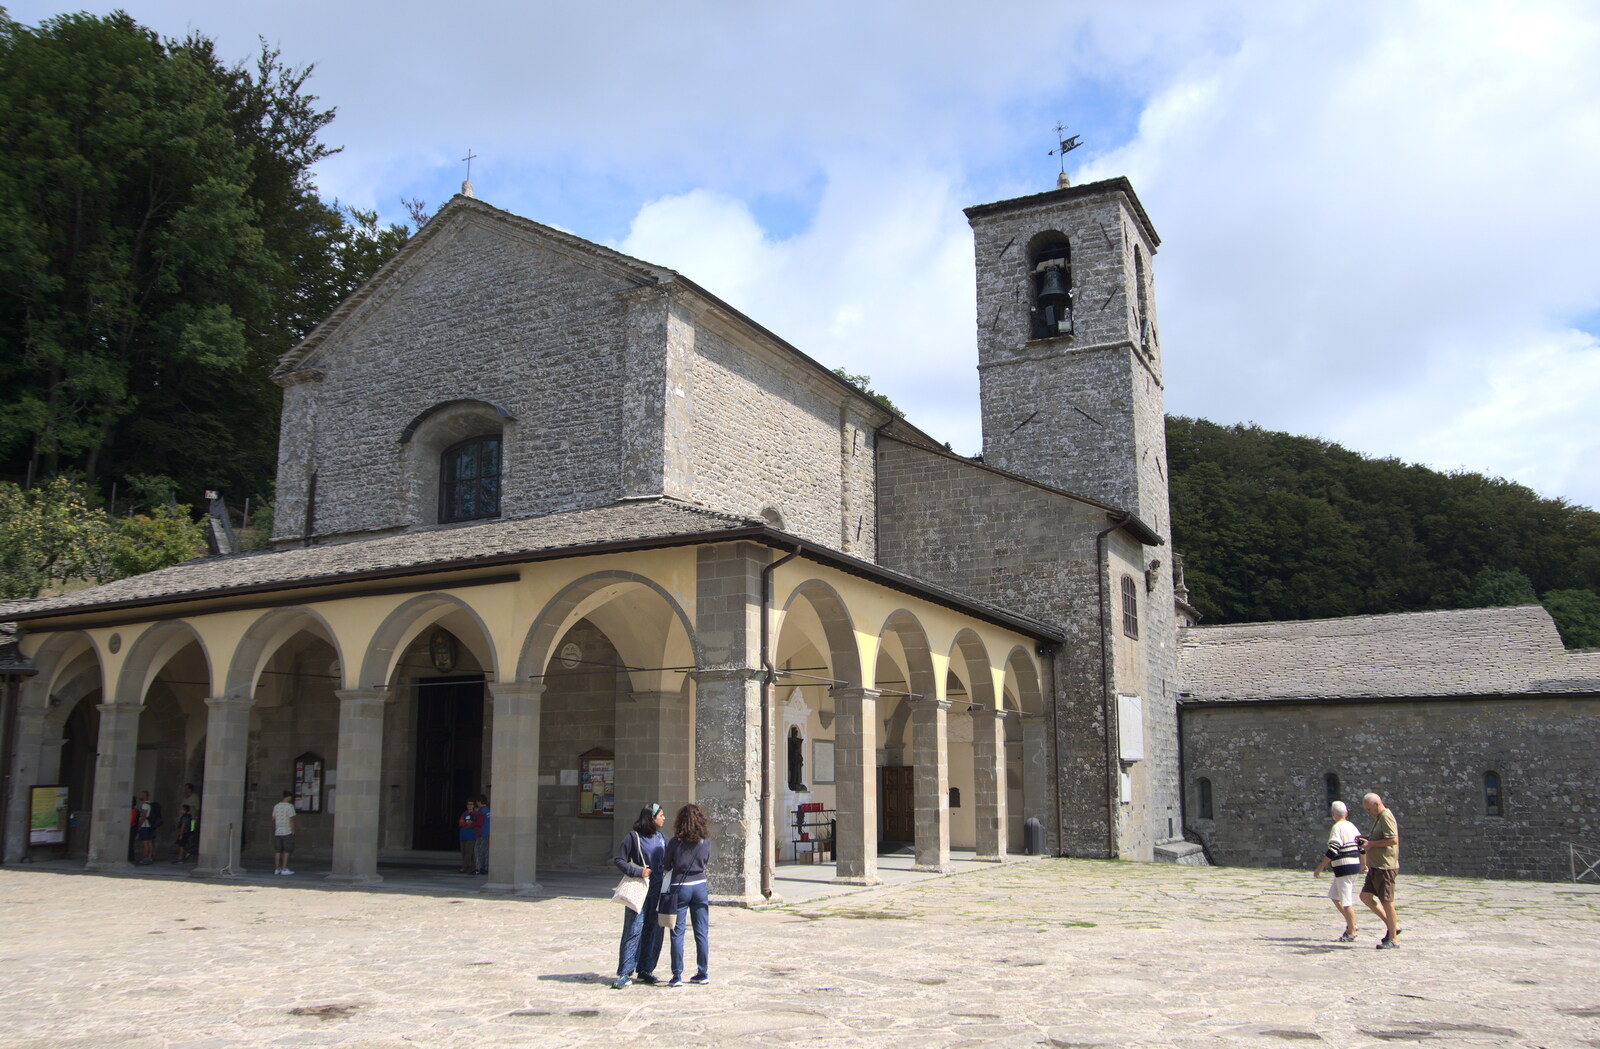 Castiglio Del Lago and Santuario della Verna, Umbria and Tuscany, Italy - 1st September 2022: The Basilica of the Sanctuary of La Verna